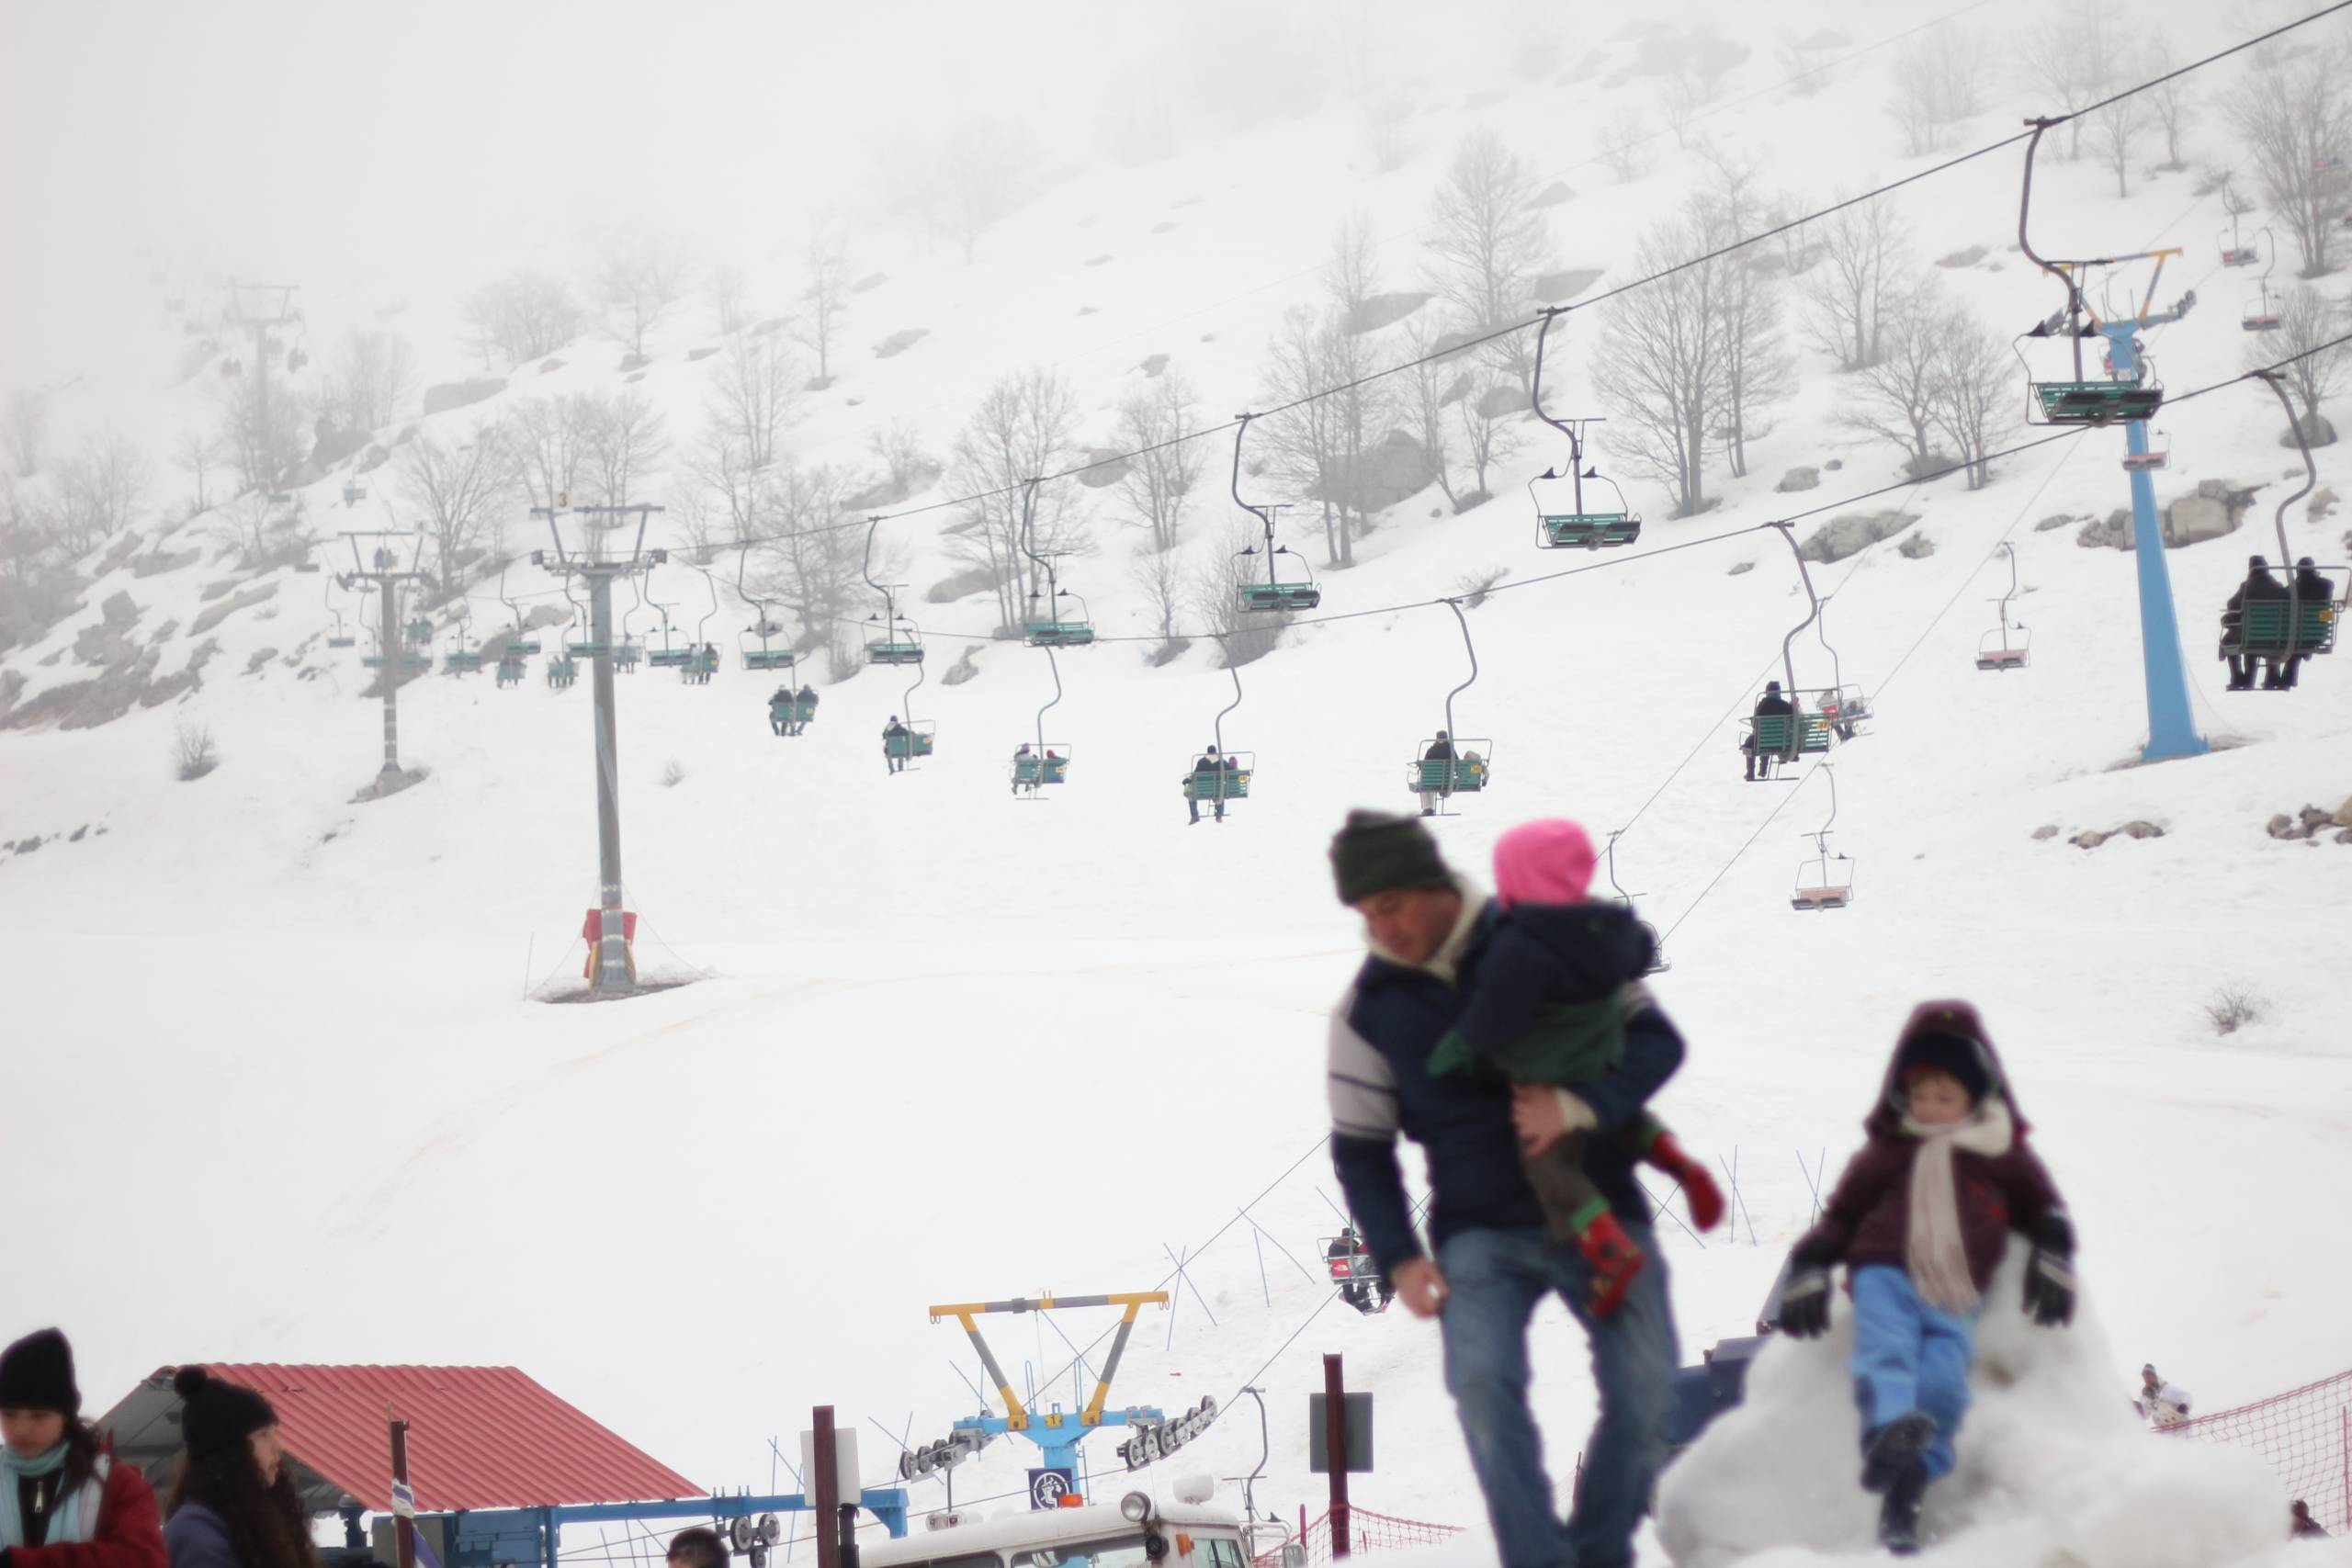 Hermon Mountain Kicks Off Exciting Ski Season: Winter Sports Enthusiasts Flock to the Slopes